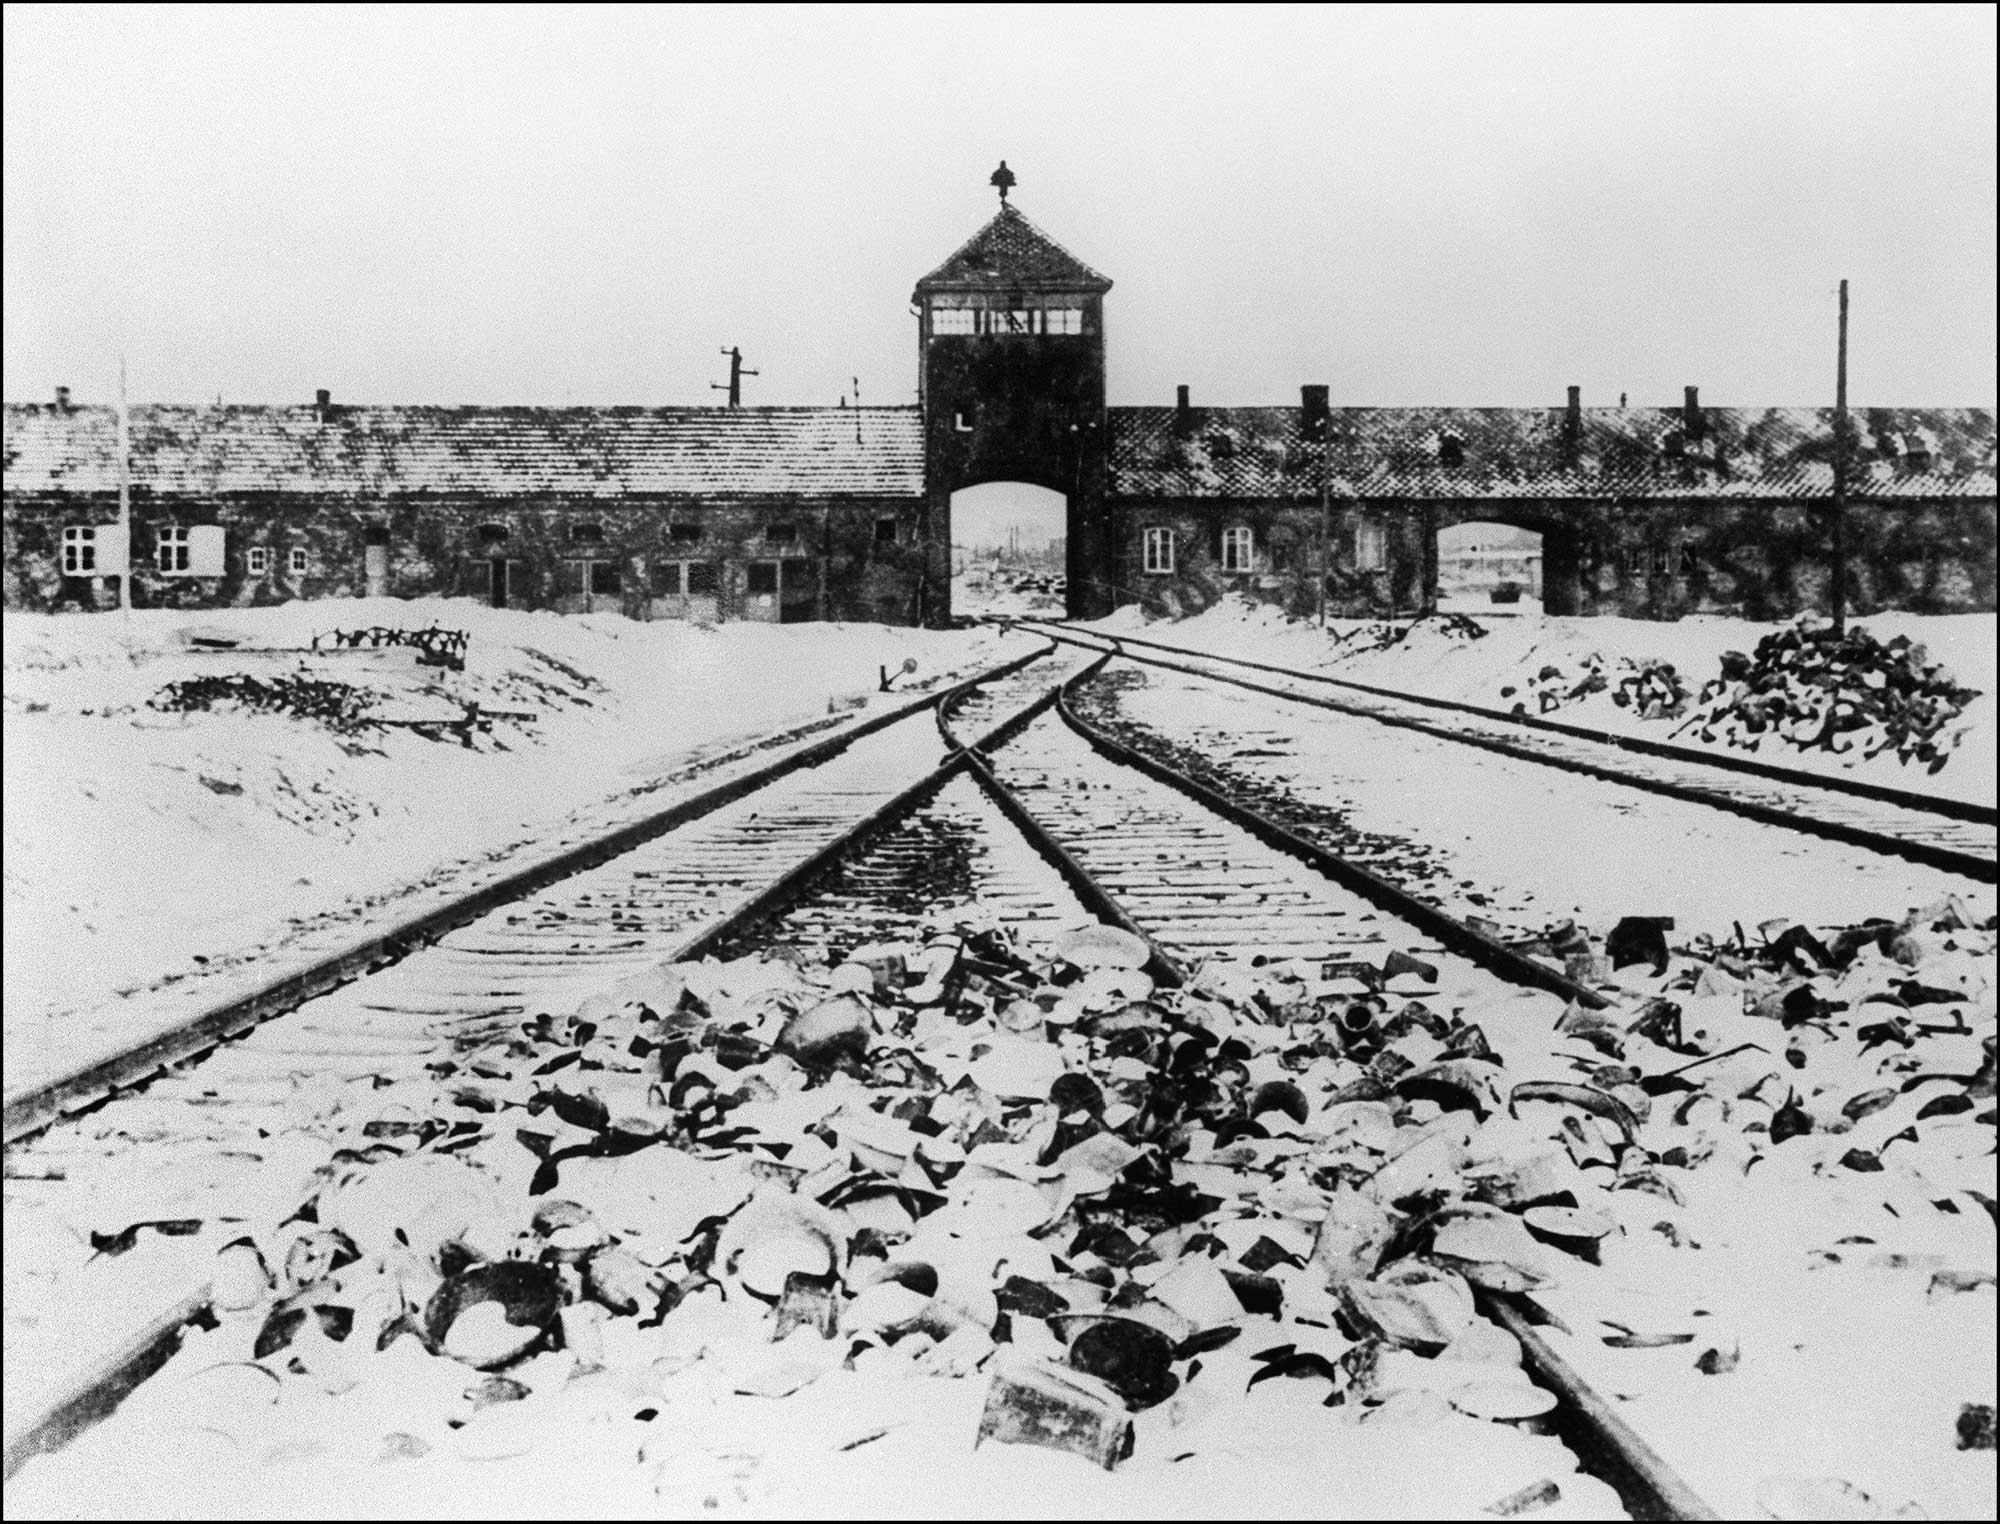 アウシュビッツ強制収容所などで数々の人体実験が行われていた